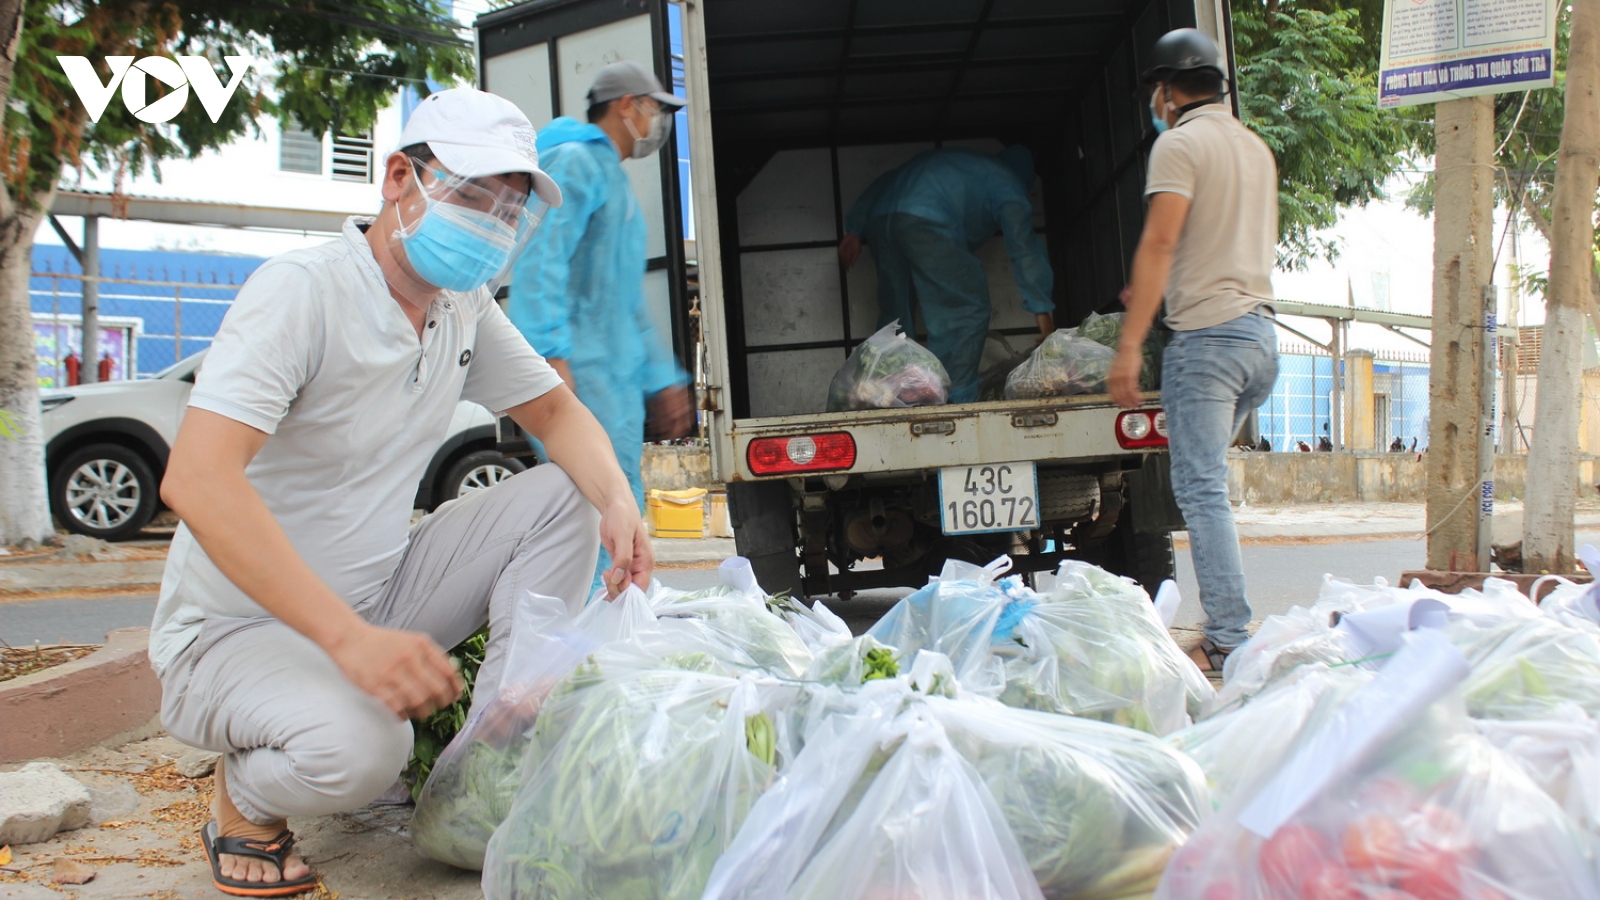 Tổ trưởng dân phố ở Đà Nẵng bị tai nạn chấn thương sọ não khi đi nhận thực phẩm giúp dân